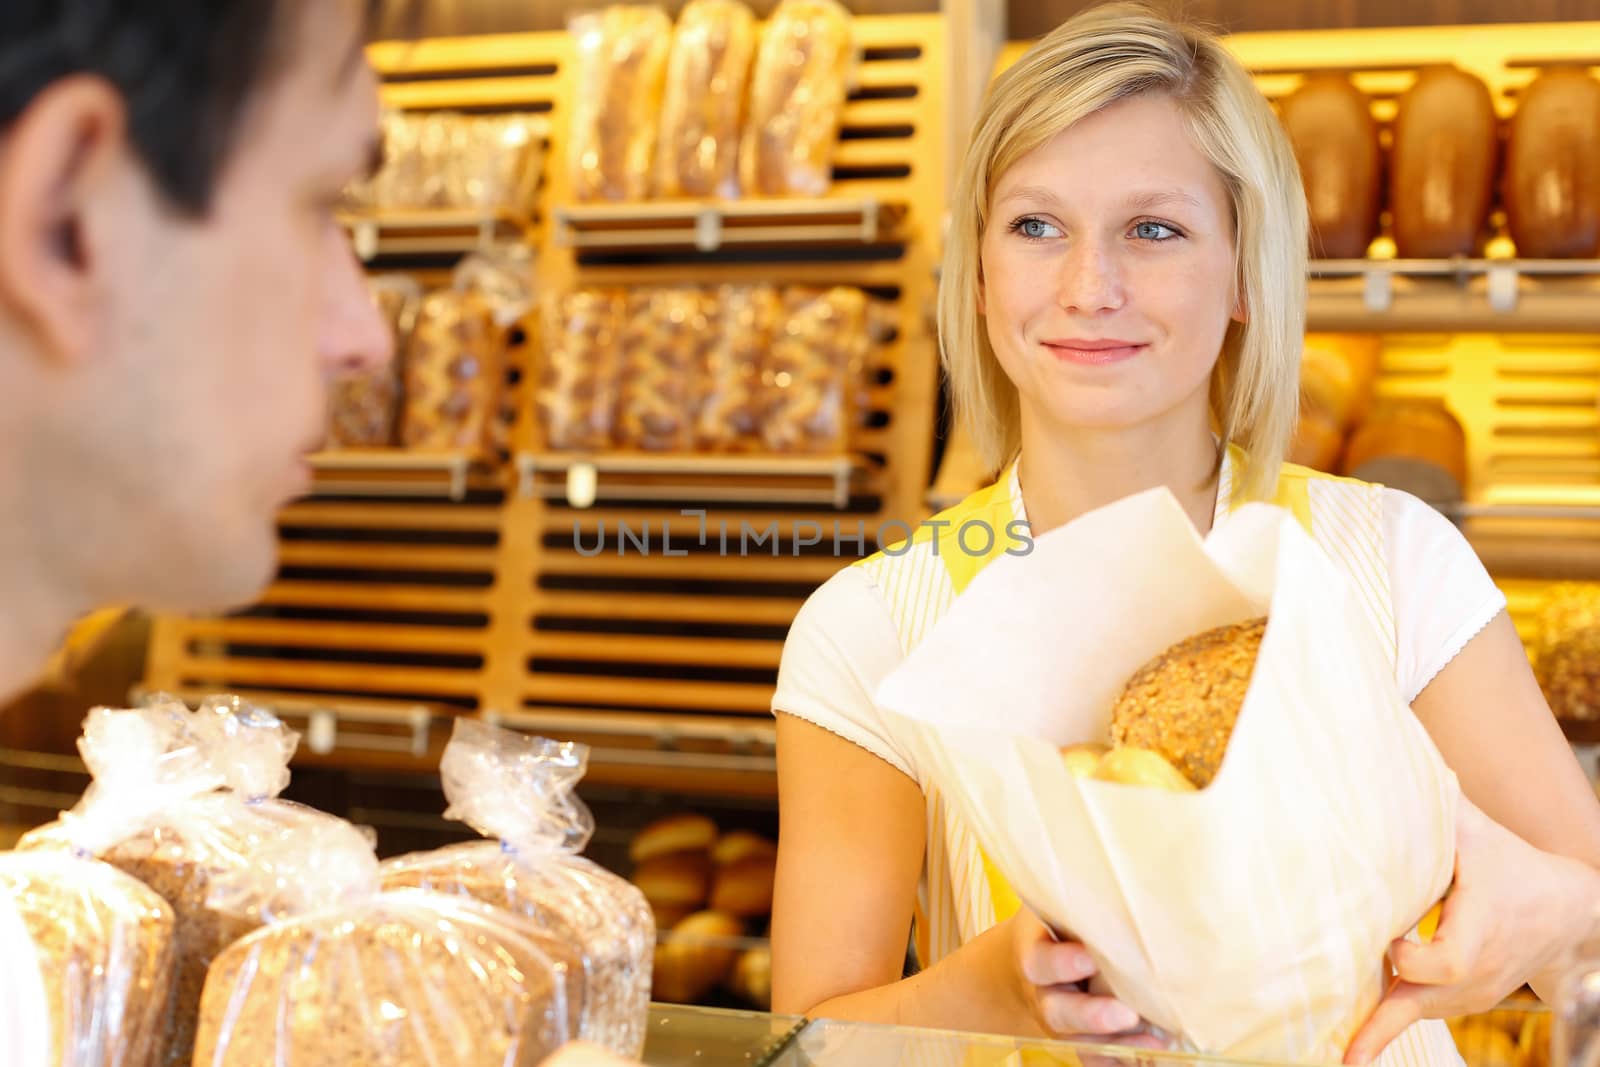 Baker's shop shopkeeper gives bread to customer by ikonoklast_fotografie